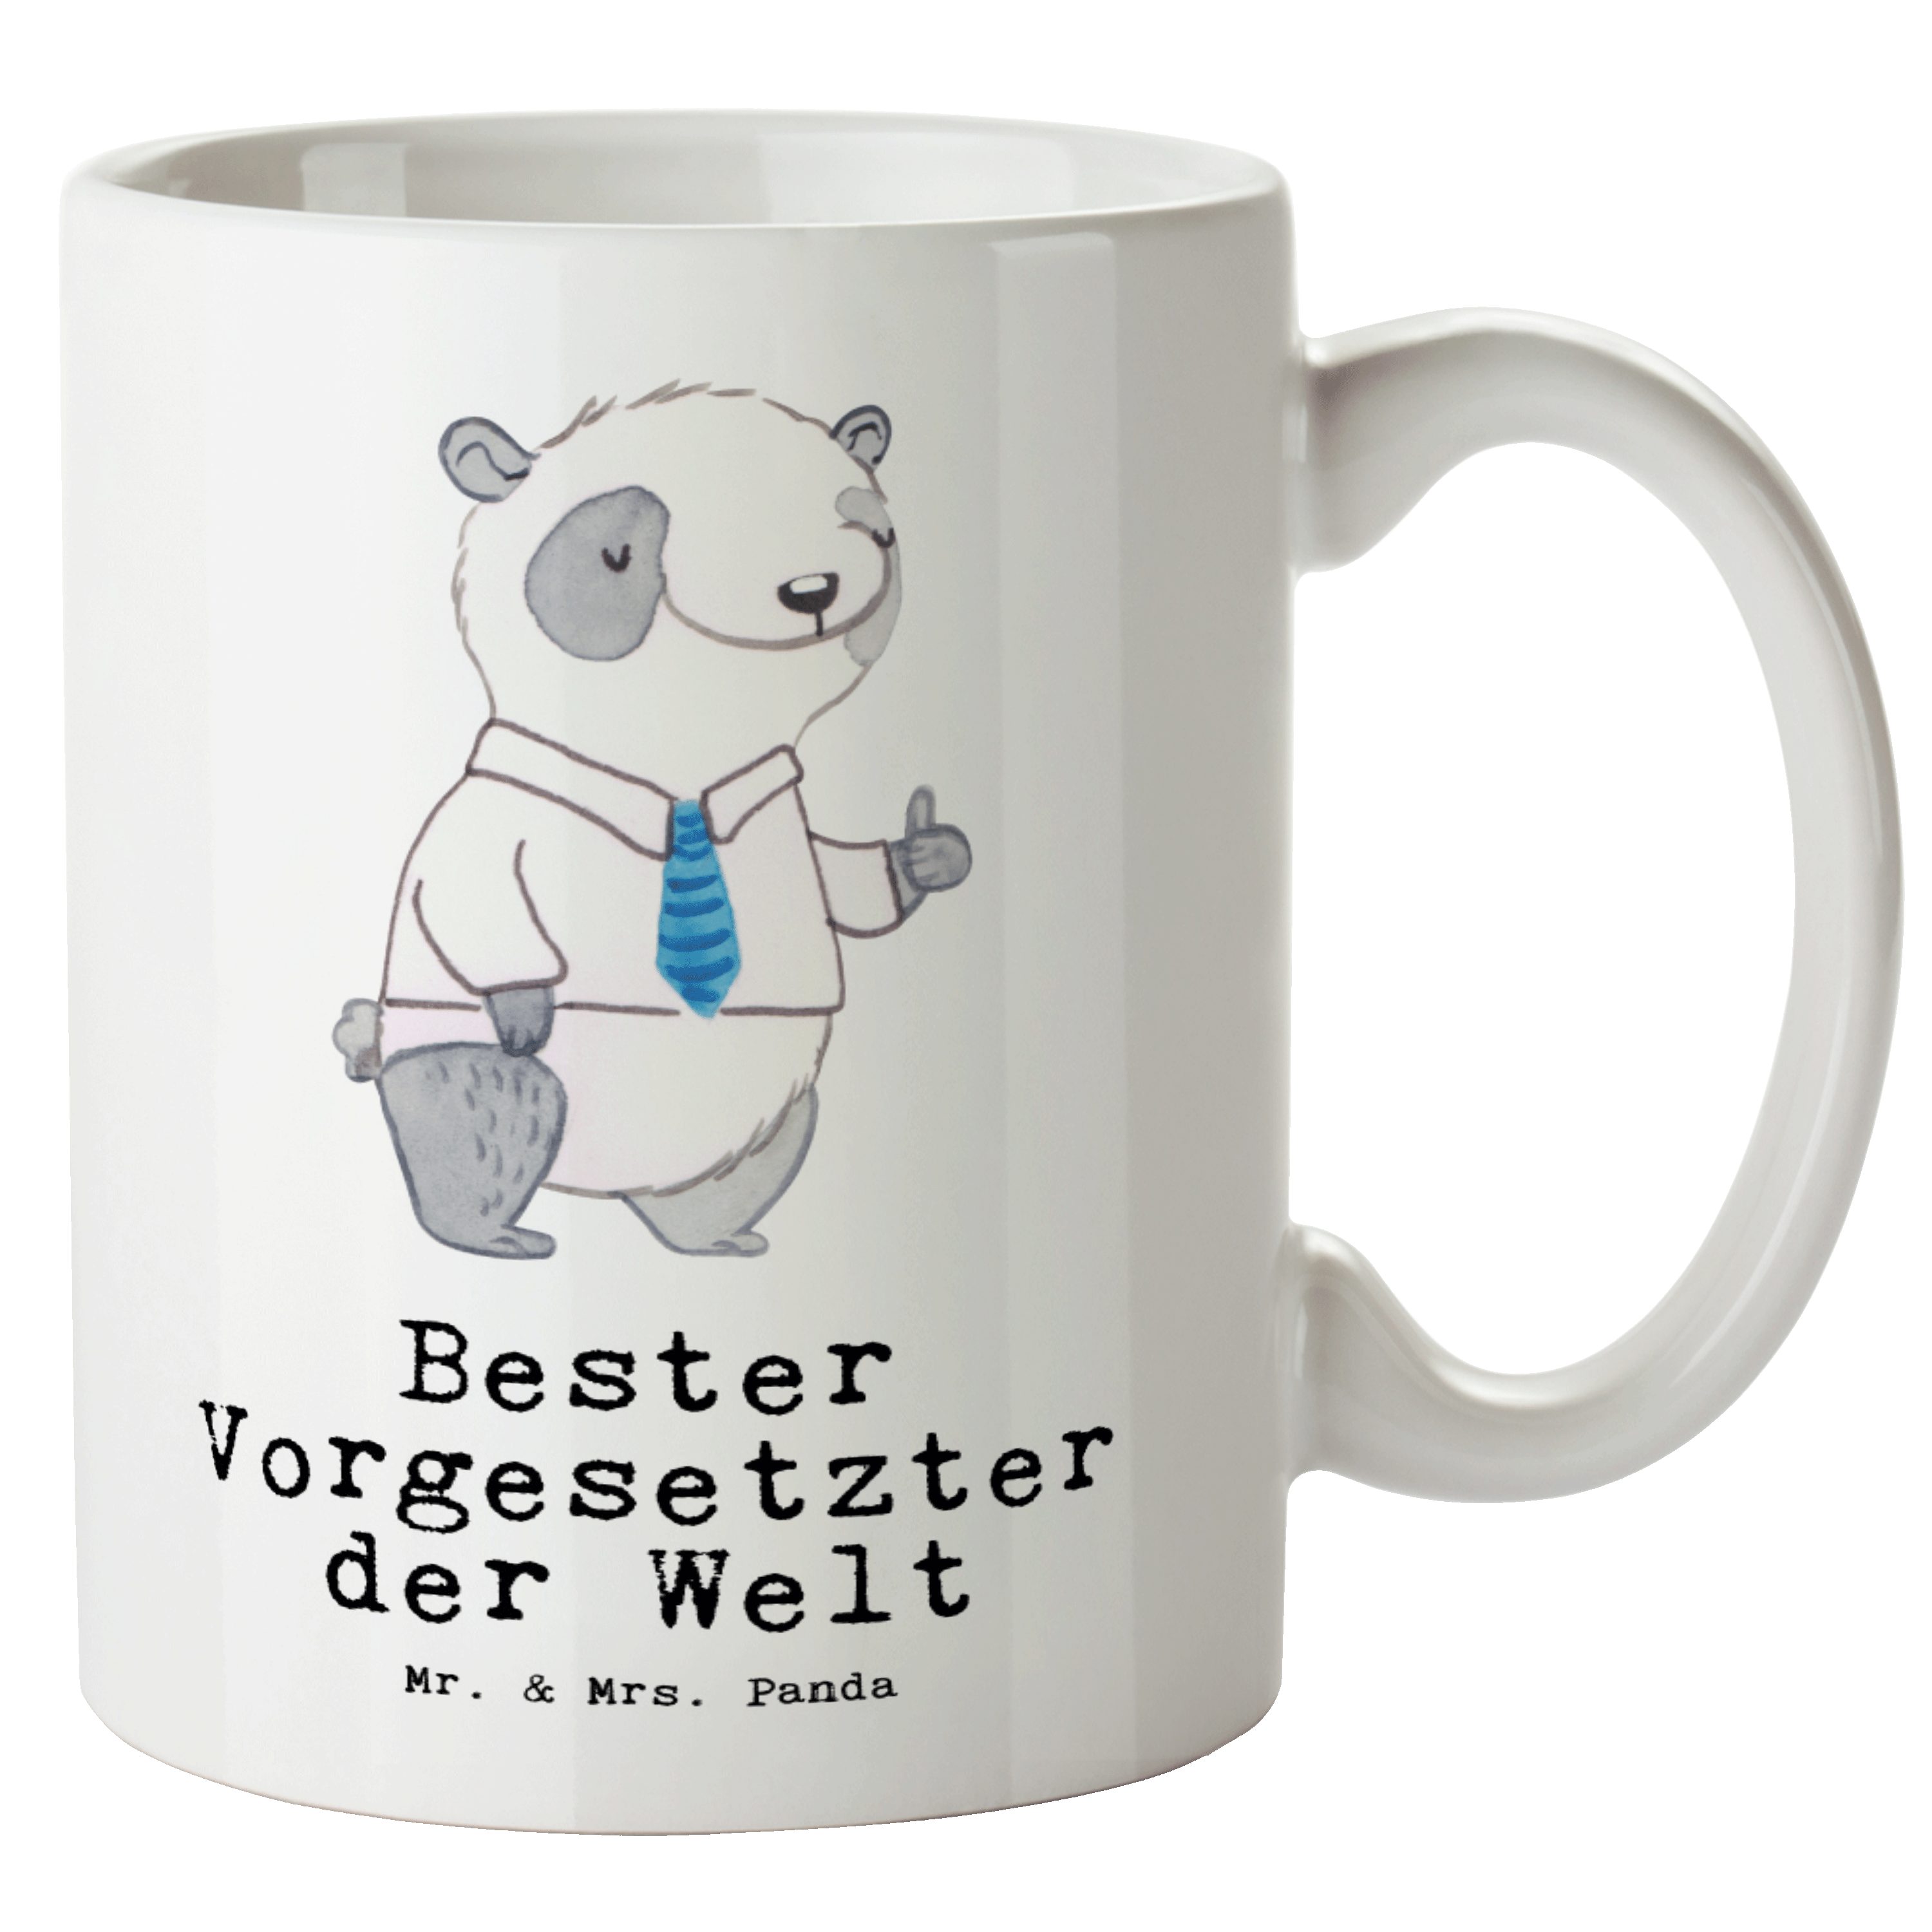 Mr. & Mrs. Panda Tasse Panda Bester Vorgesetzter der Welt - Weiß - Geschenk, Dankeschön, Ges, XL Tasse Keramik